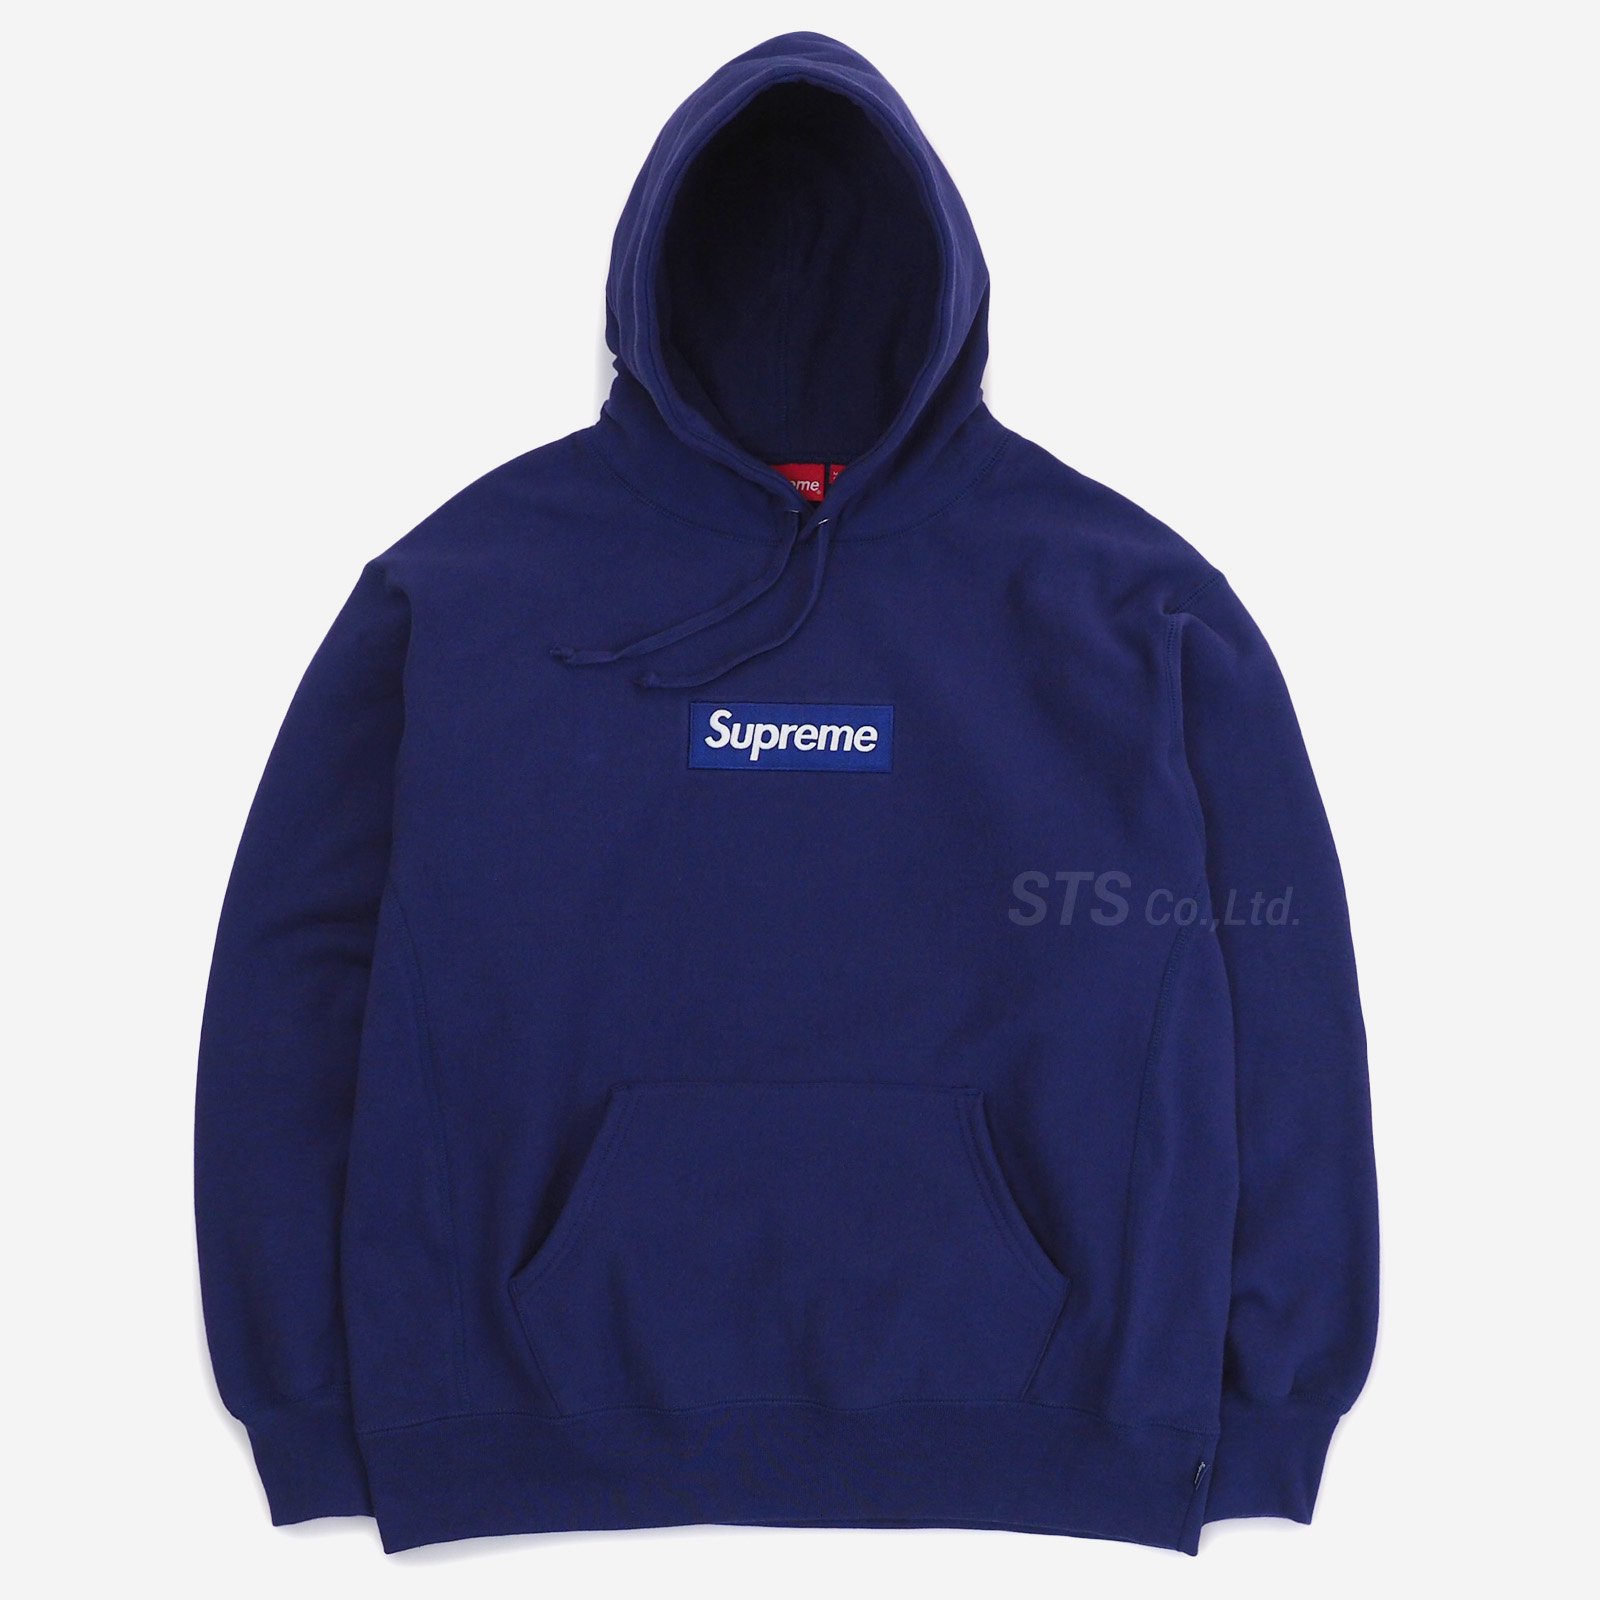 Supreme Box Logo Hooded Sweatshirt M